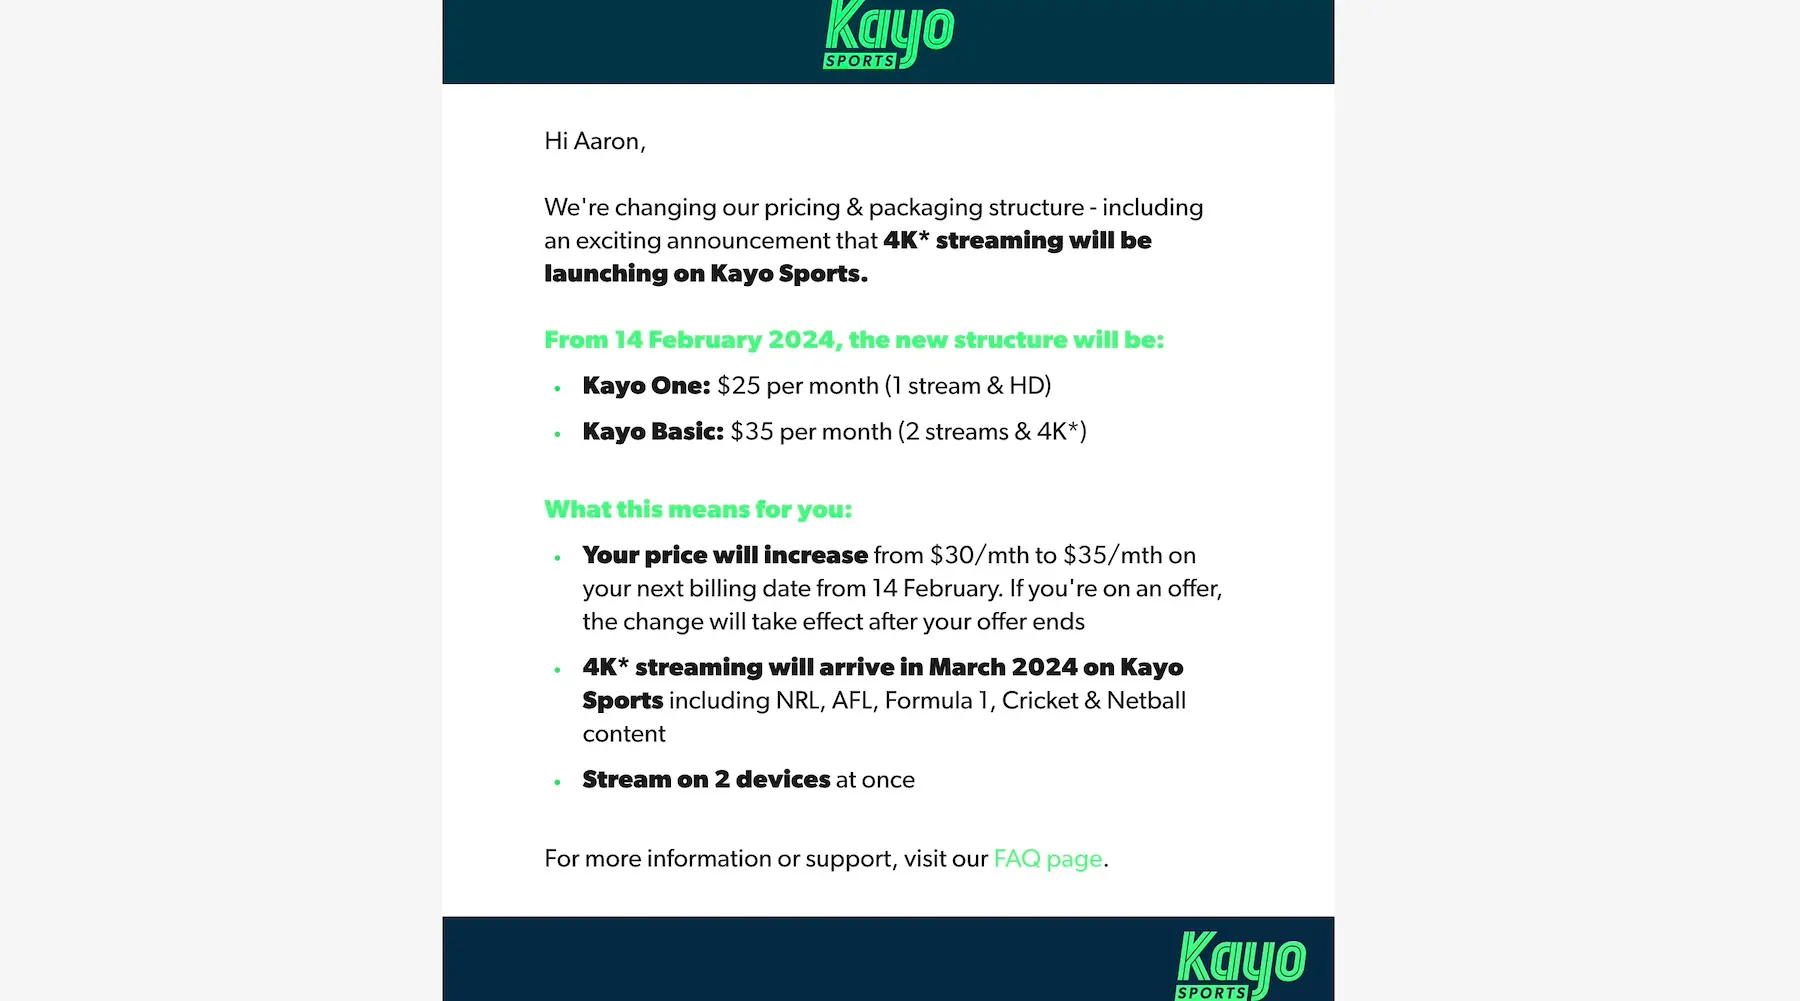 Kayo sports email communicating 